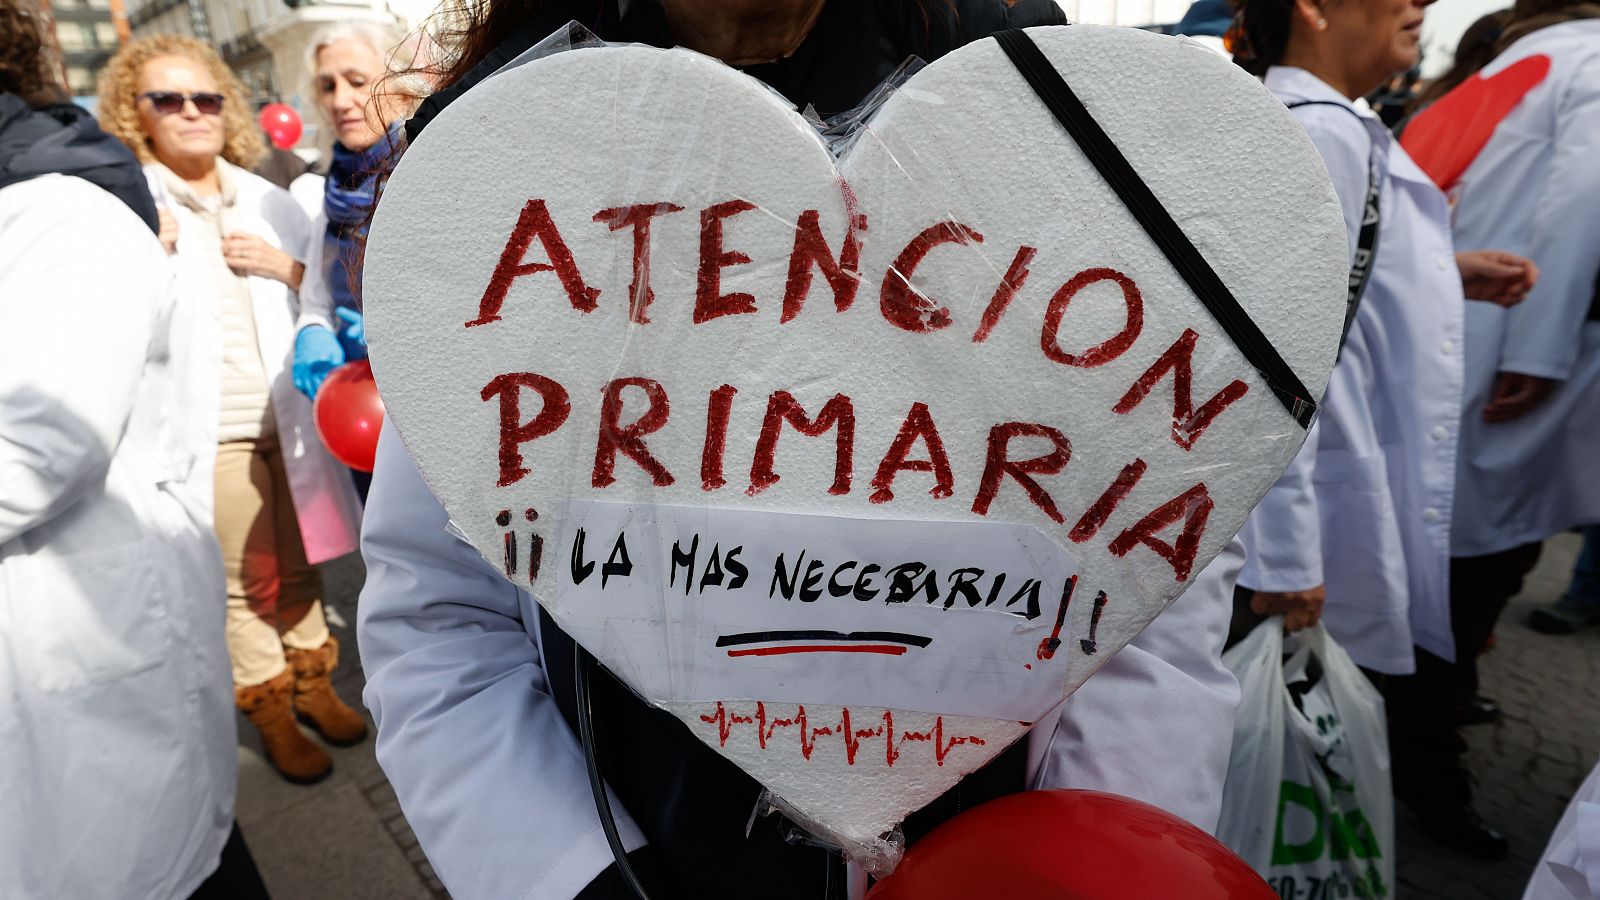 Vista de la manifestación de médicos y pediatras de la Atención Primaria. Una pancarta con forma de corazón dice "Atencion Primaria la mas necesaria"